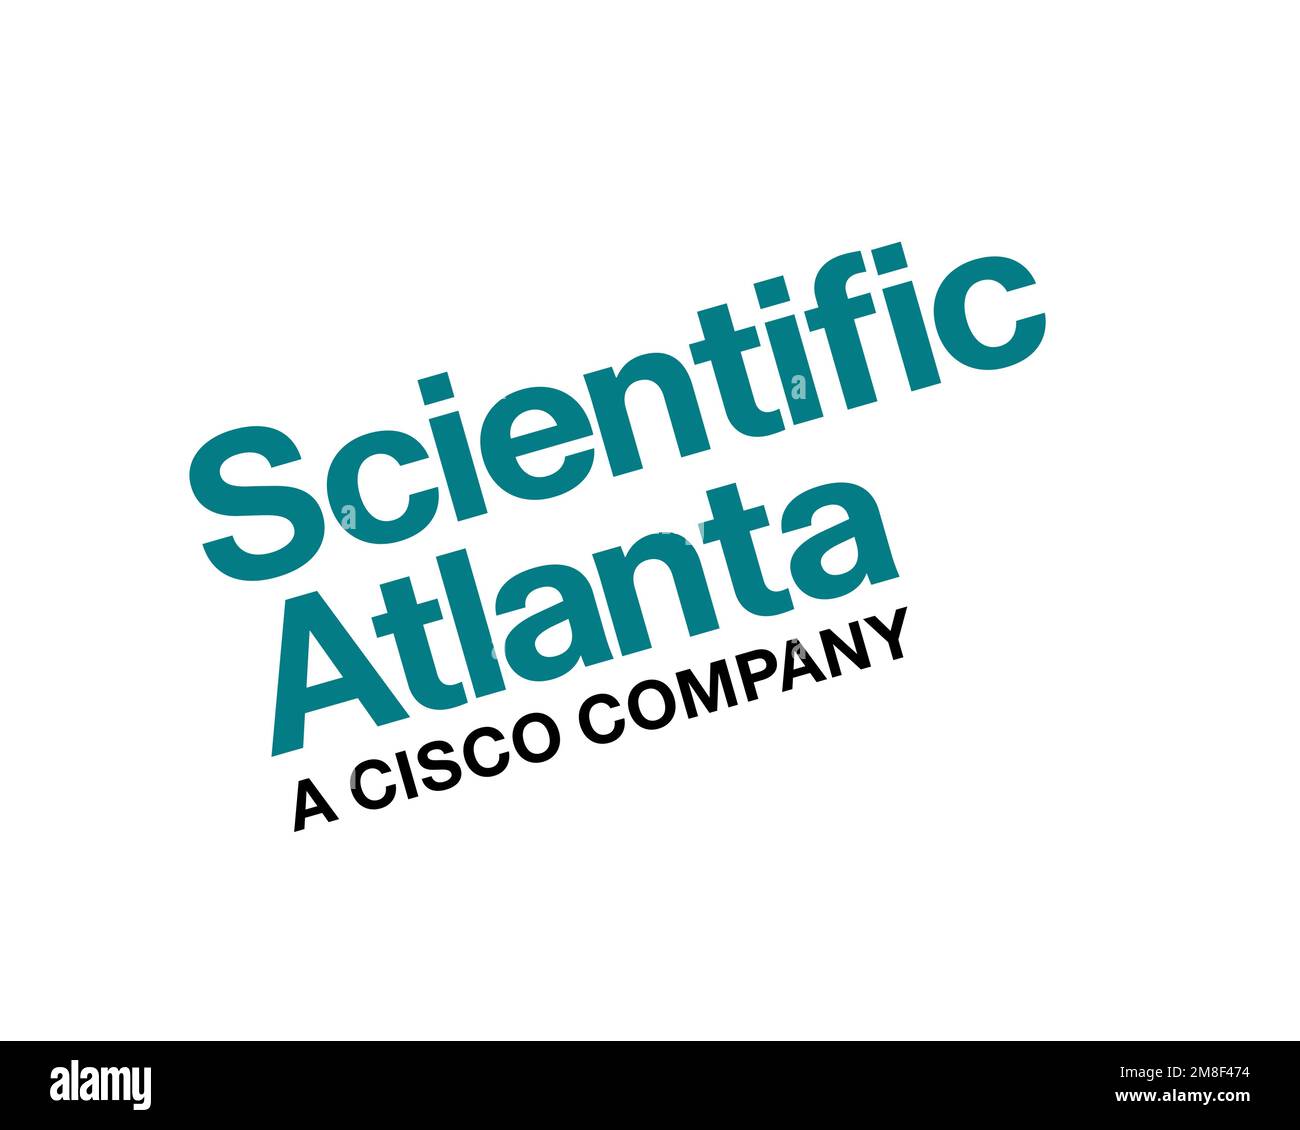 Scientific Atlanta, rotated logo, white background Stock Photo